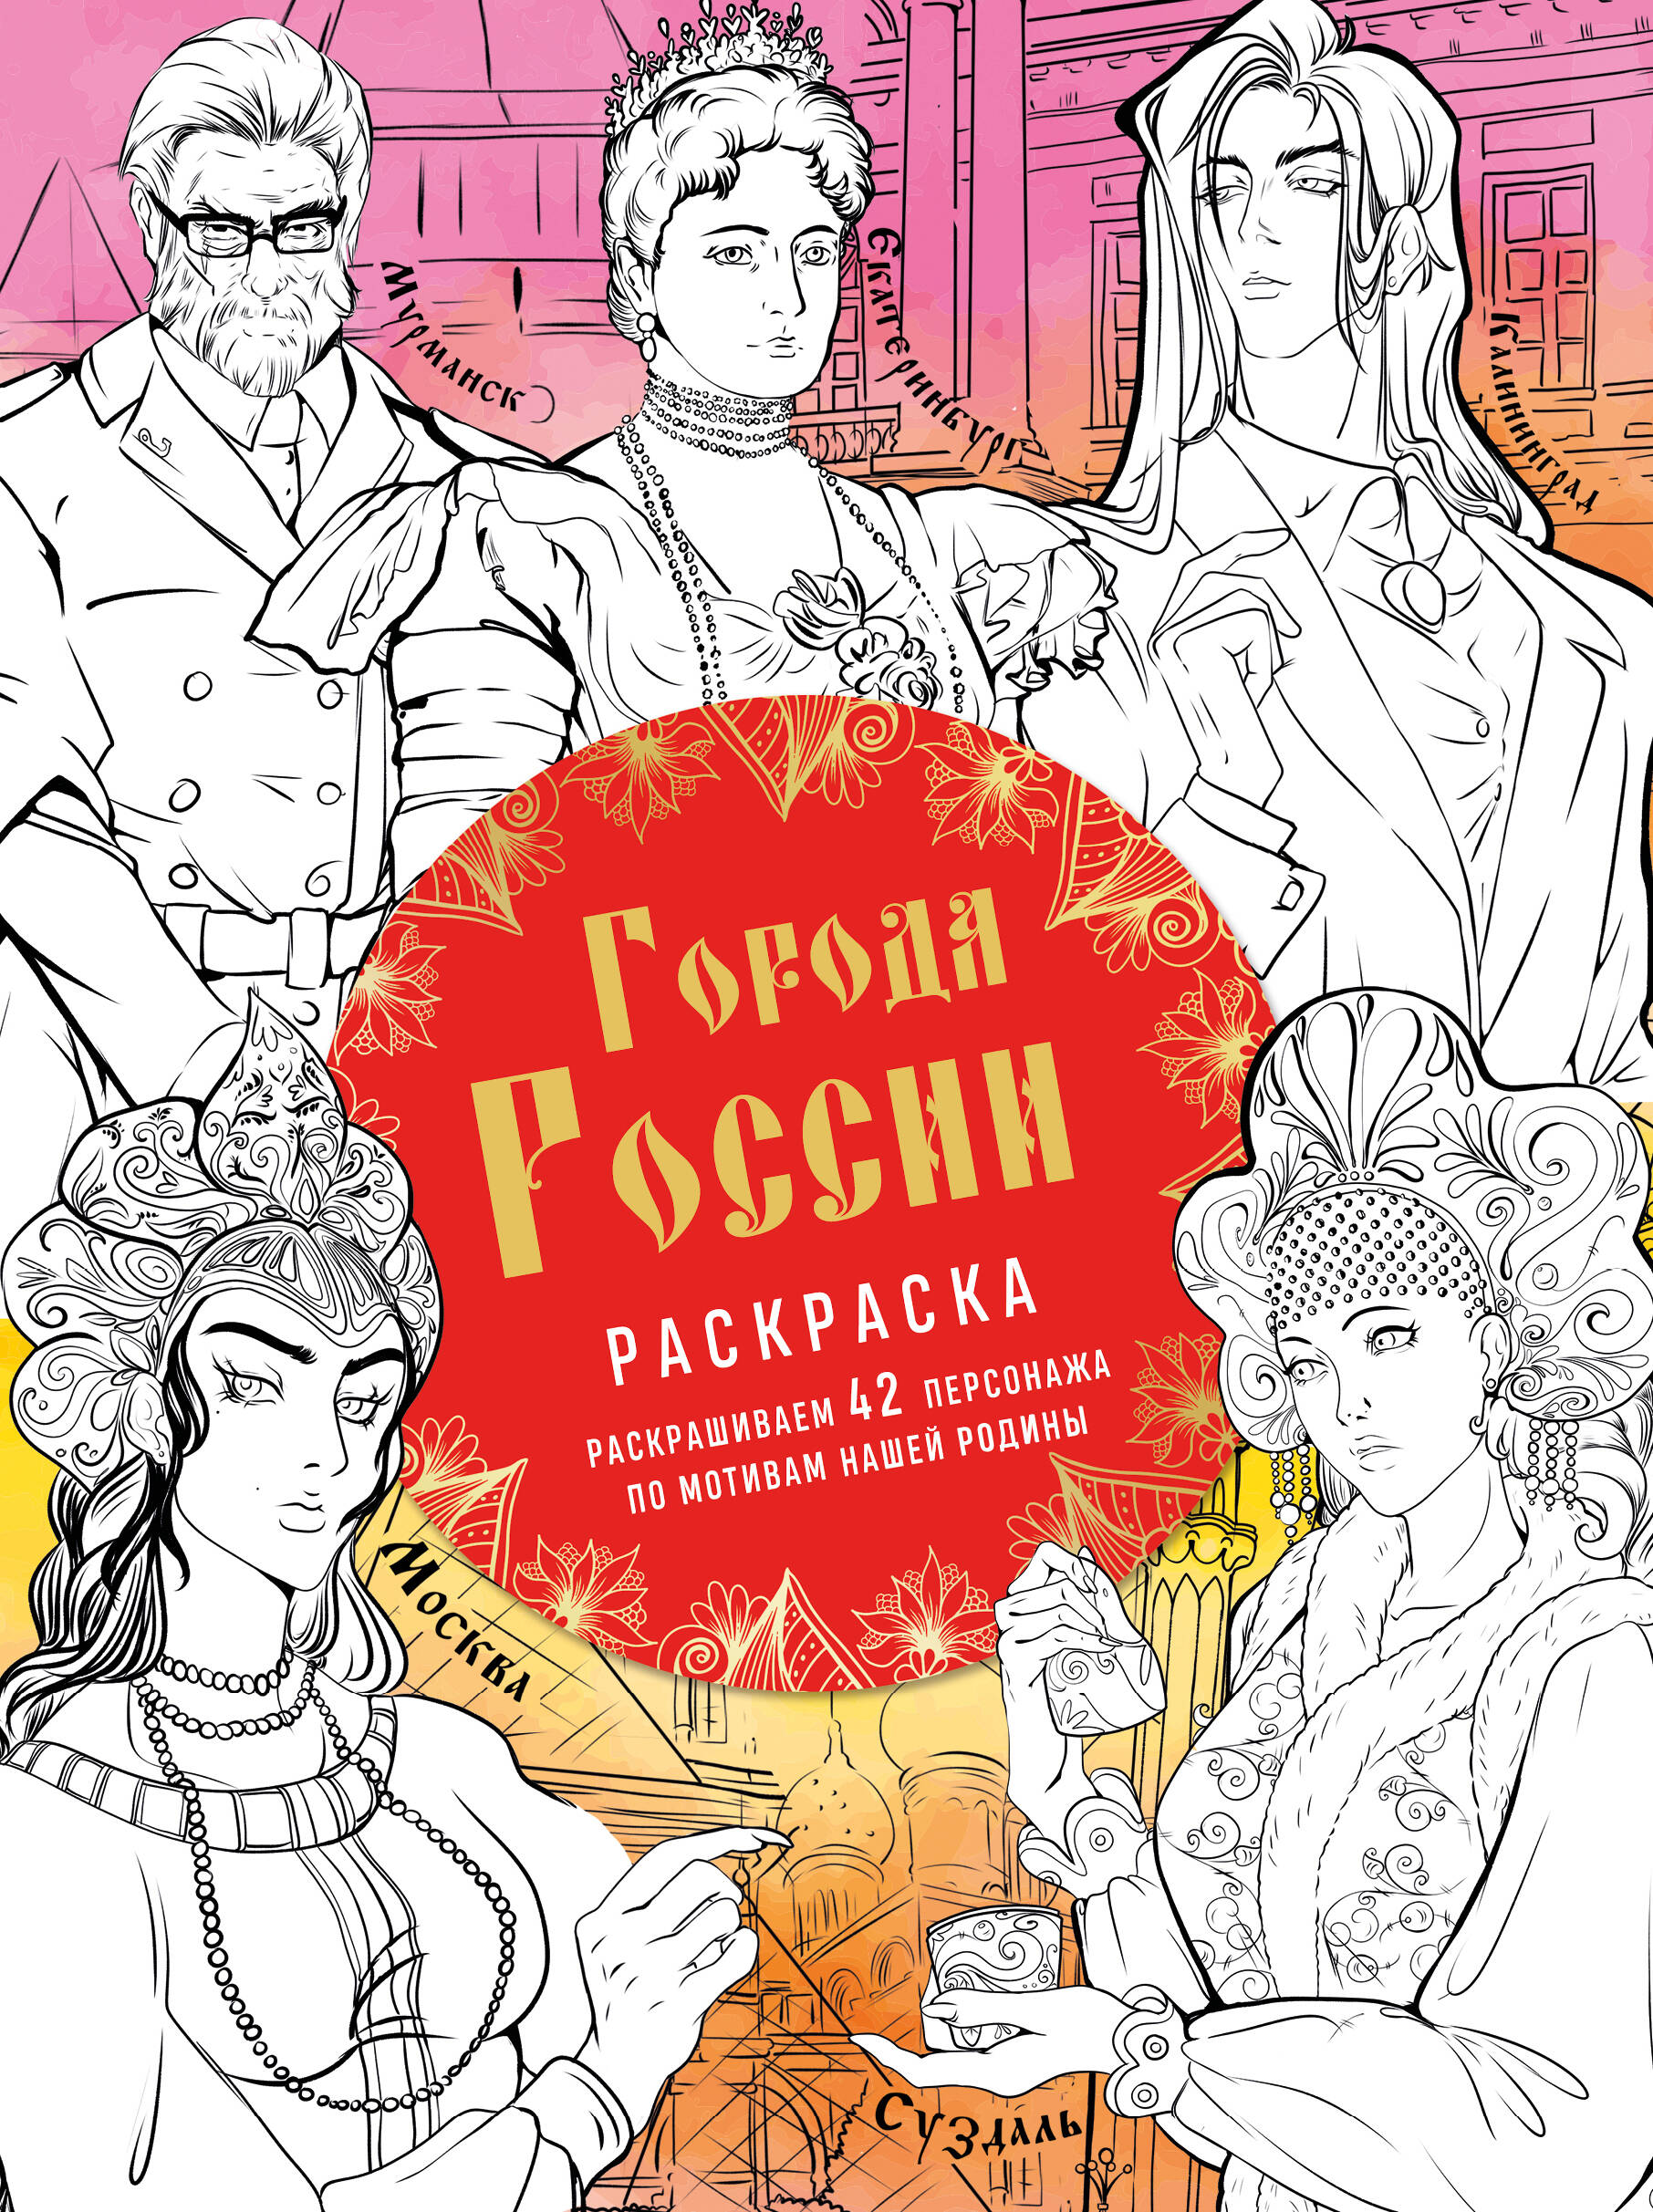  книга Города России. Раскрашиваем 42 персонажа по мотивам нашей родины